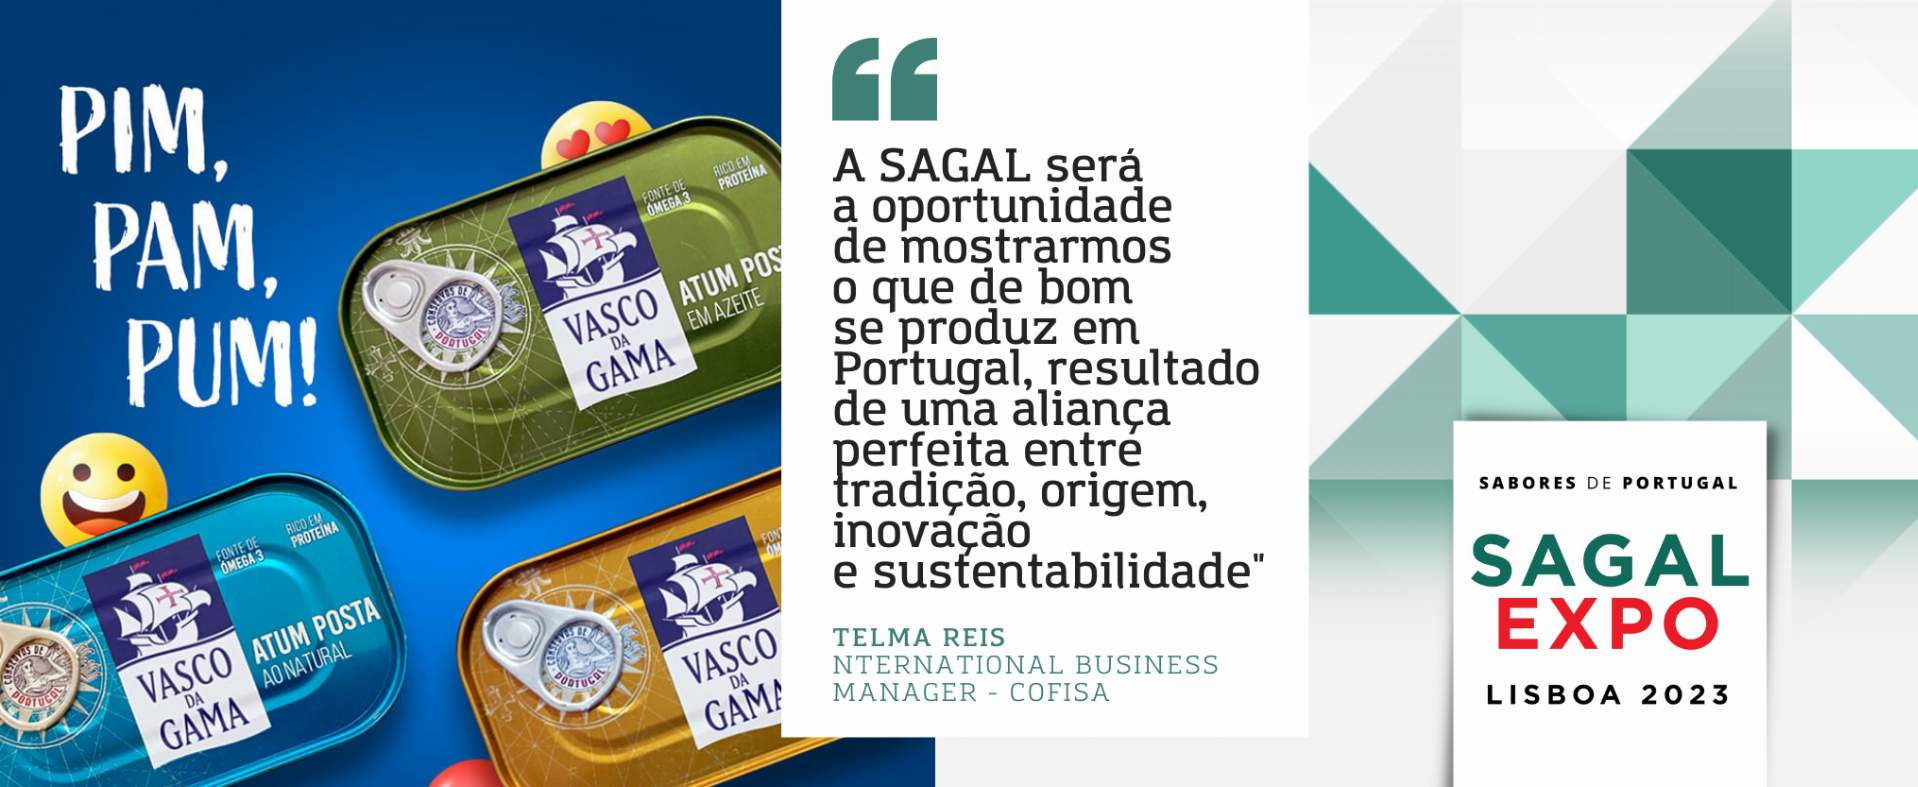 Cofisa: “A Sagal será uma vez mais a oportunidade de mostrarmos o que de bom se produz em Portugal, resultado de uma aliança perfeita entre tradição, origem, inovação e sustentabilidade”